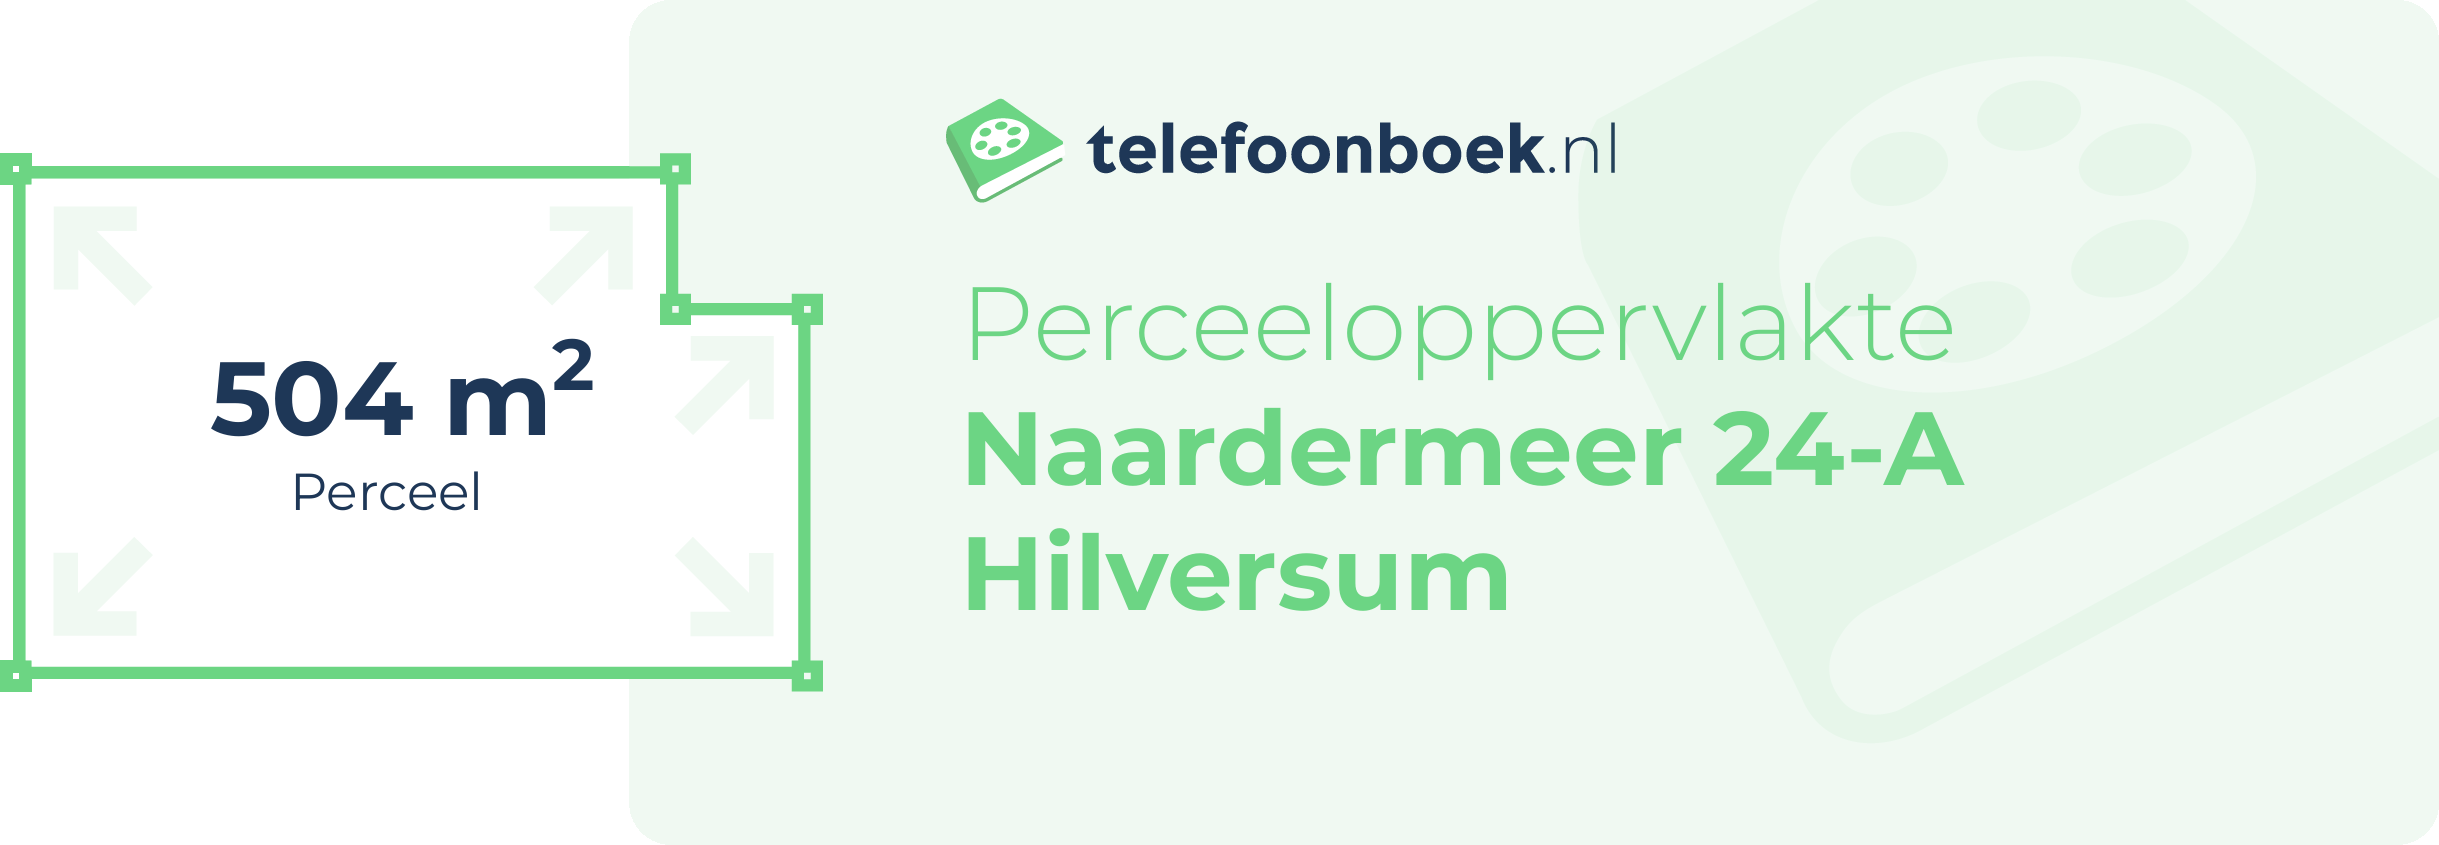 Perceeloppervlakte Naardermeer 24-A Hilversum